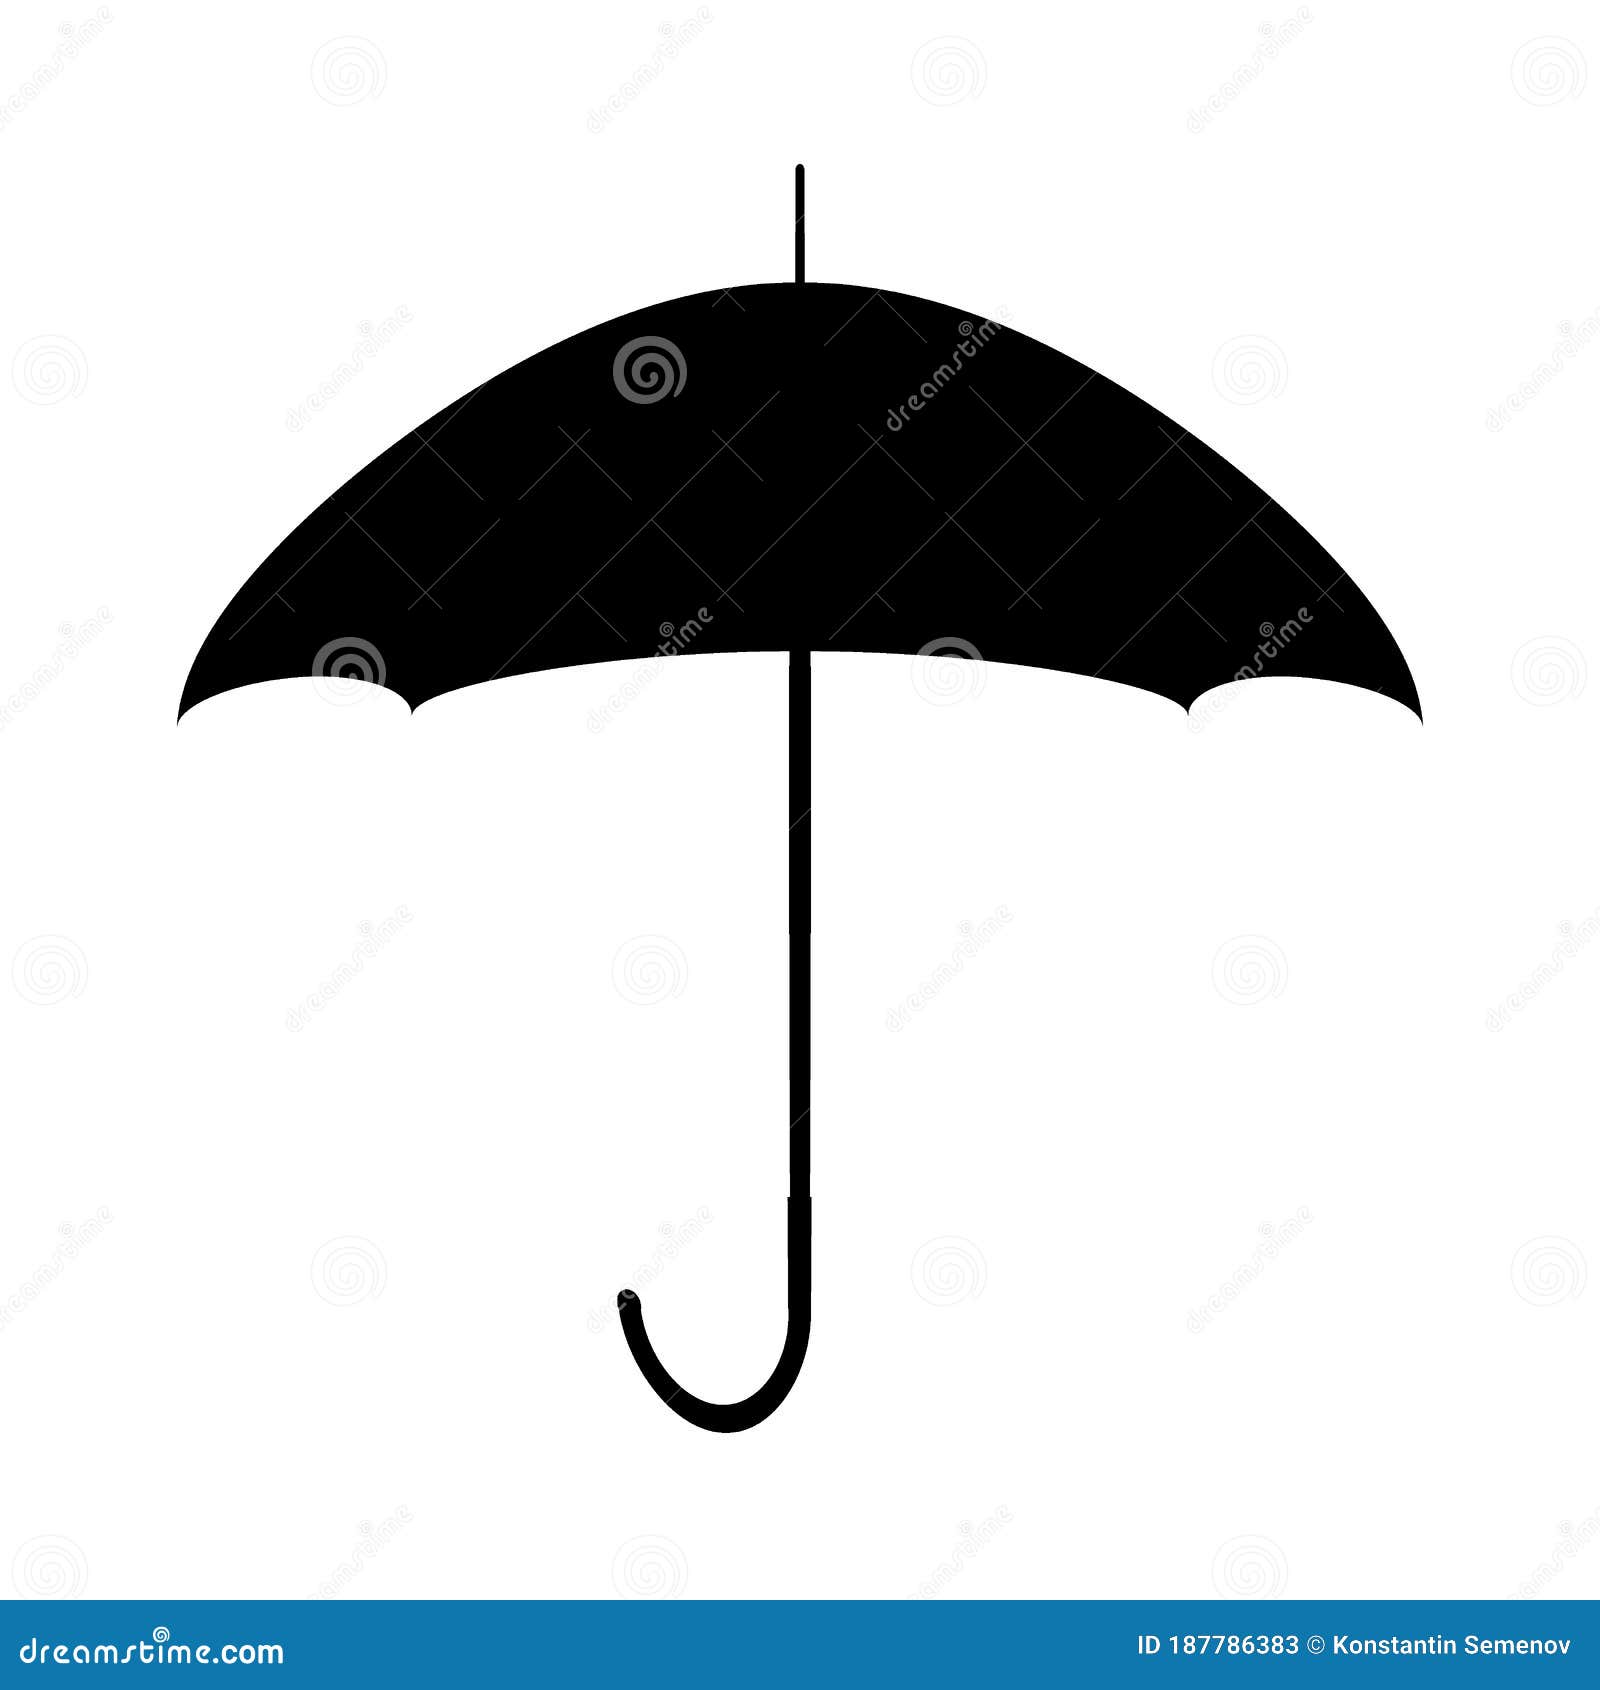 防雨伞的矢量符号插画图片素材_ID:109267865-Veer图库